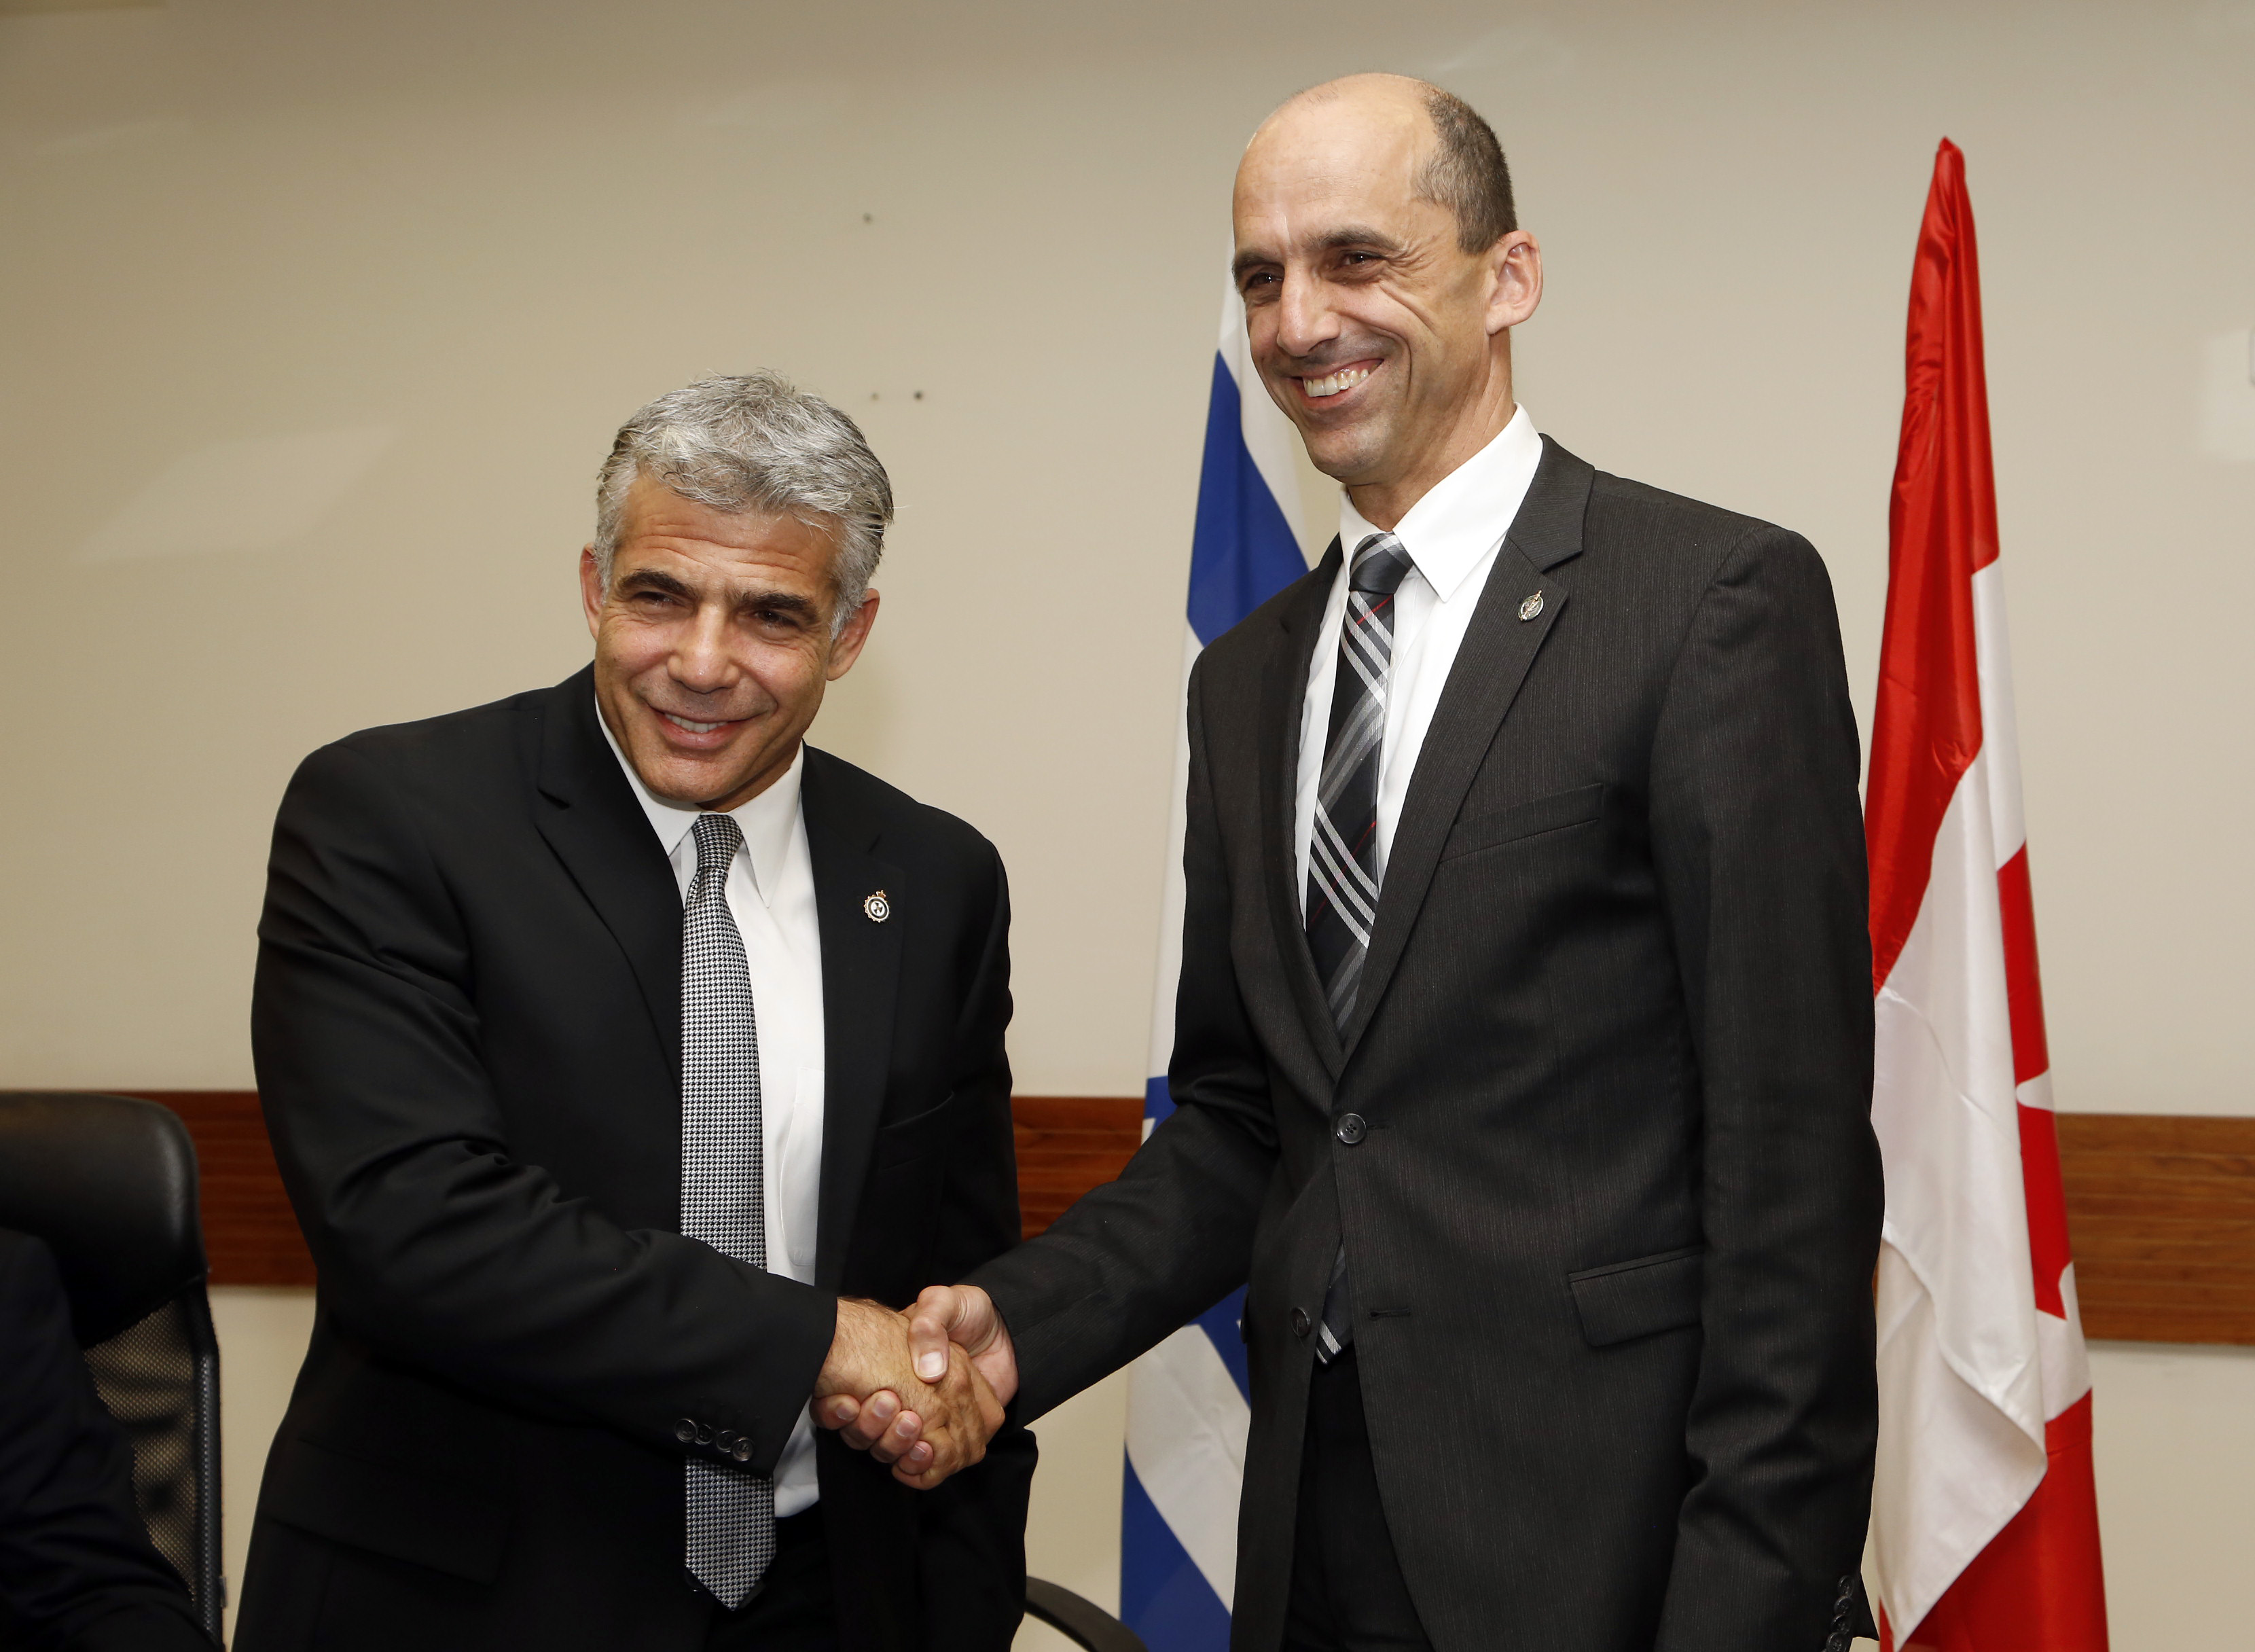 L'honorable Steven Blaney, ministre de la Sécurité publique et de la Protection civile, et Yair Lapid, ministre des Finance de l'État d'Israël, ont signé une Déclaration d'intention afin de lancer les négociations en vue de conclure un Accord de reconnaissance mutuelle le 15 septembre, à Tel Aviv, en Israël.